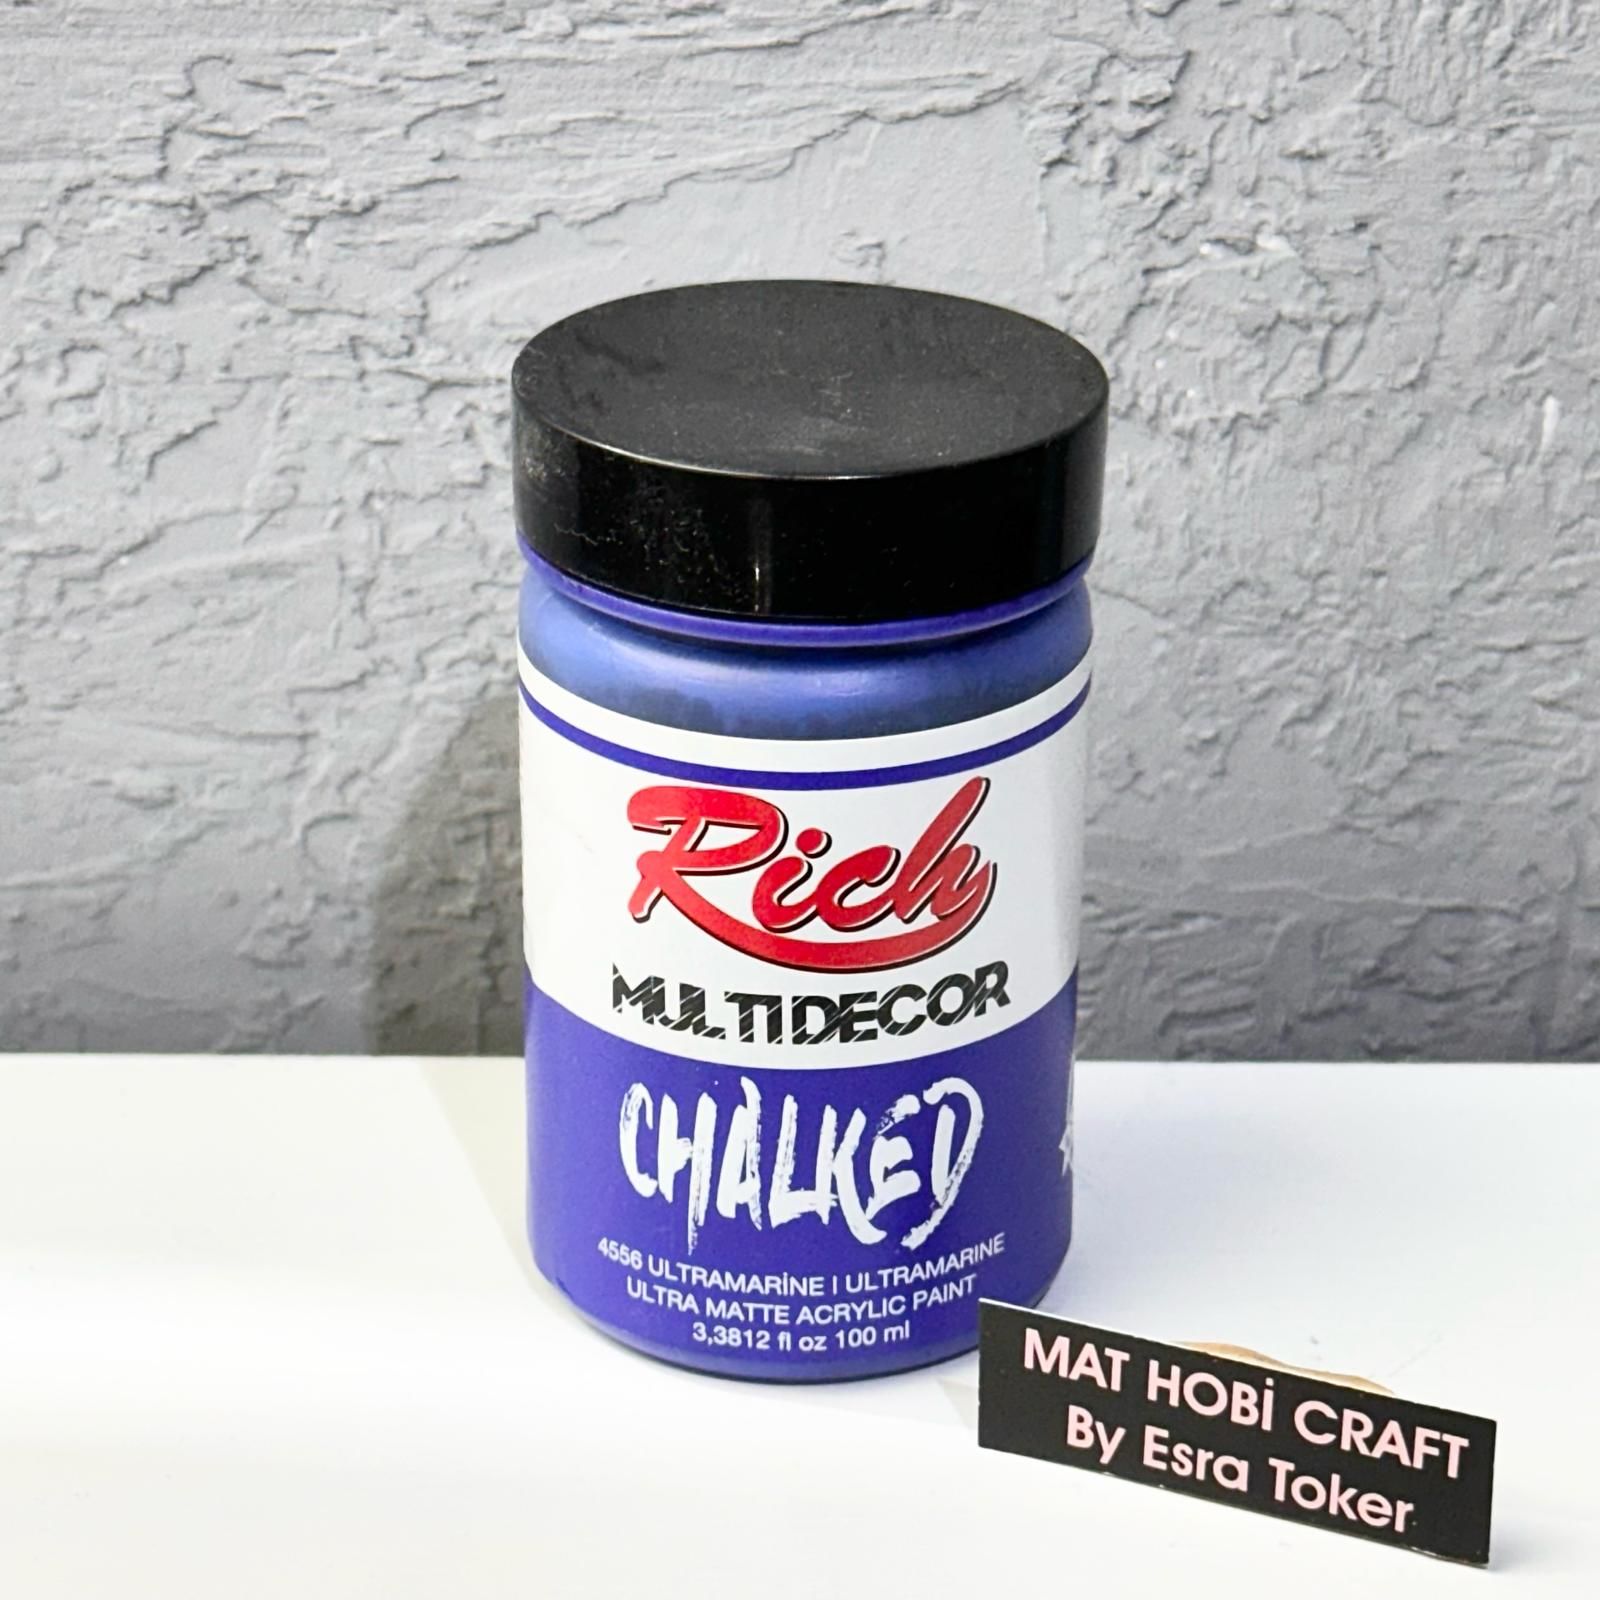 Multidecor Chalked - 4556 Ultramarin Mavi 100 ml